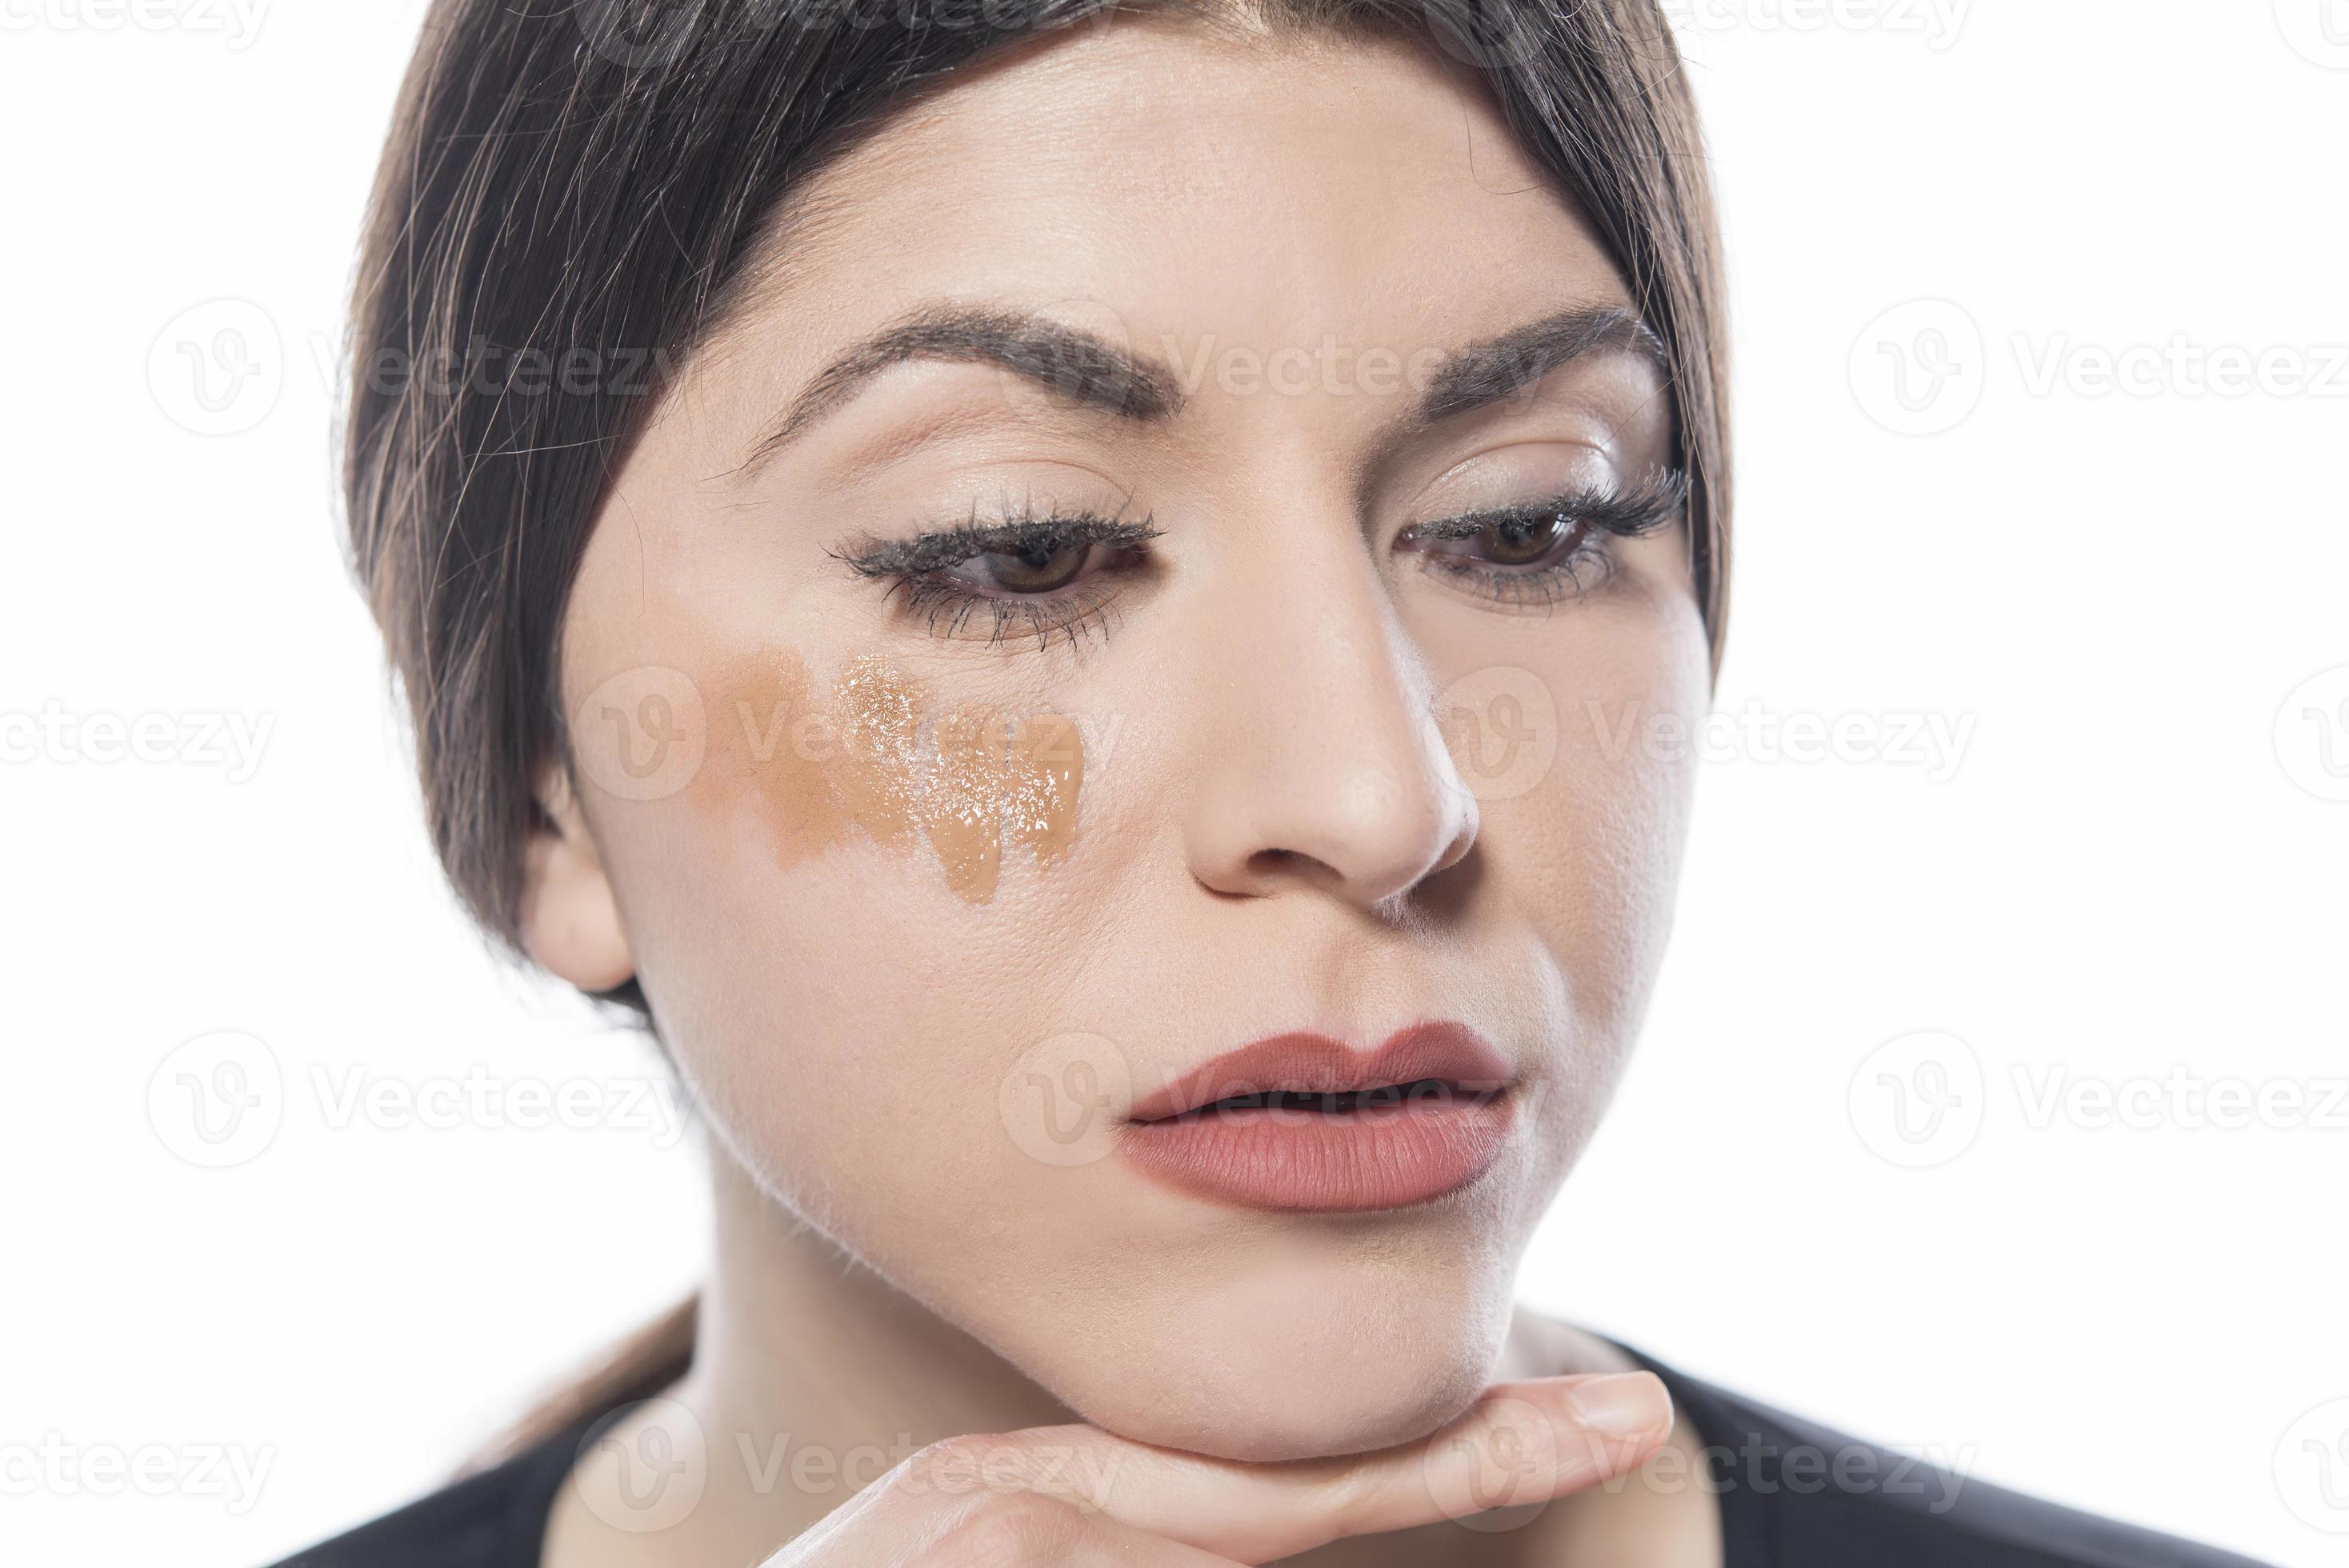 https://static.vecteezy.com/ti/photos-gratuite/p2/16607135-portrait-d-une-jeune-femme-appliquant-un-maquillage-liquide-sur-son-visage-isole-sur-fond-blanc-photo.jpg